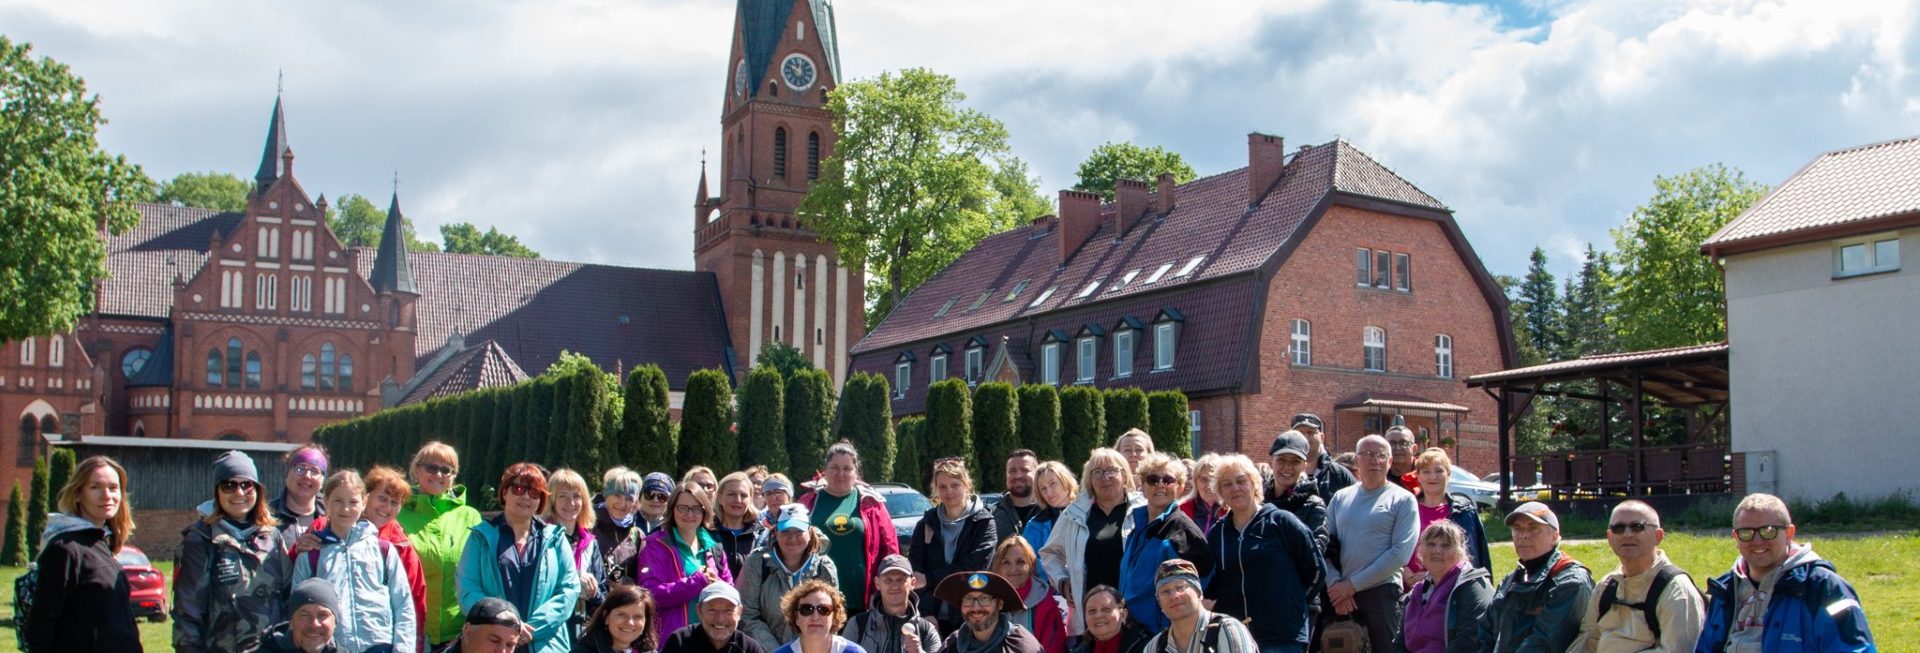 Zdjęcie zapraszające mieszkańców i turystów do Gietrzwałdu na bezpłatny spacer po Gietrzwałdzie z przewodnikiem PTTK.